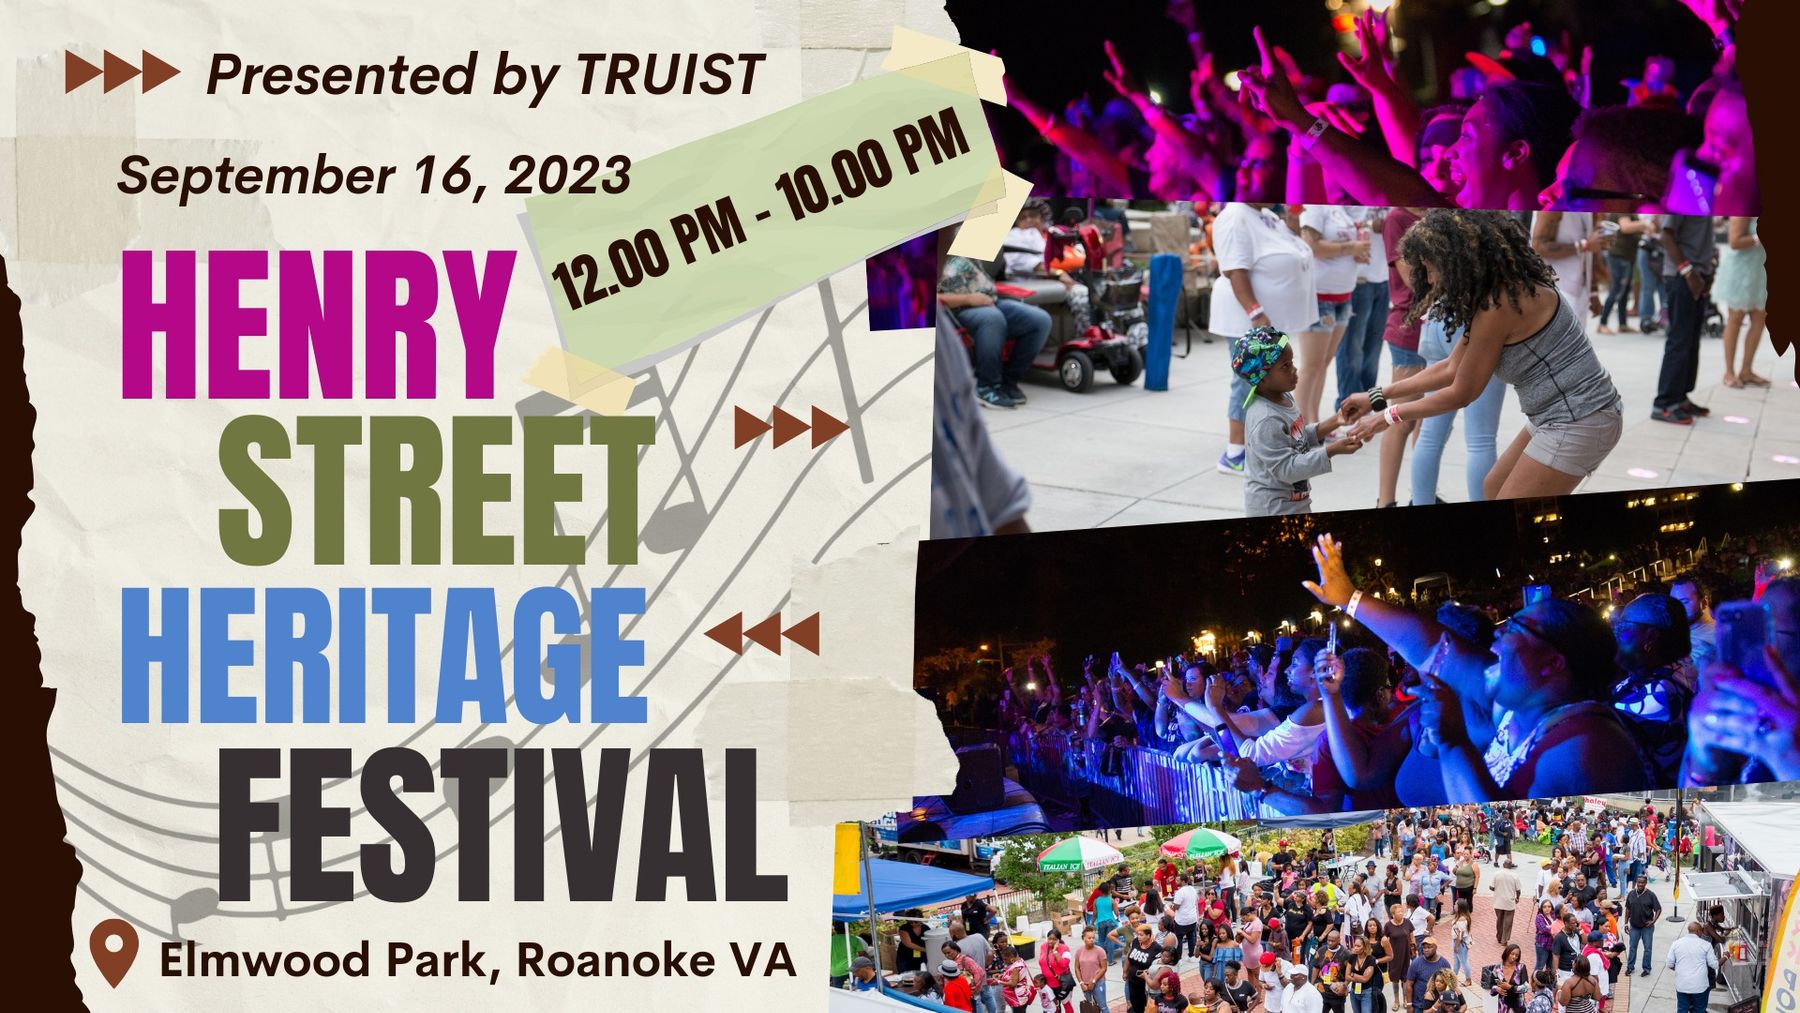 Henry Street Heritage Festival